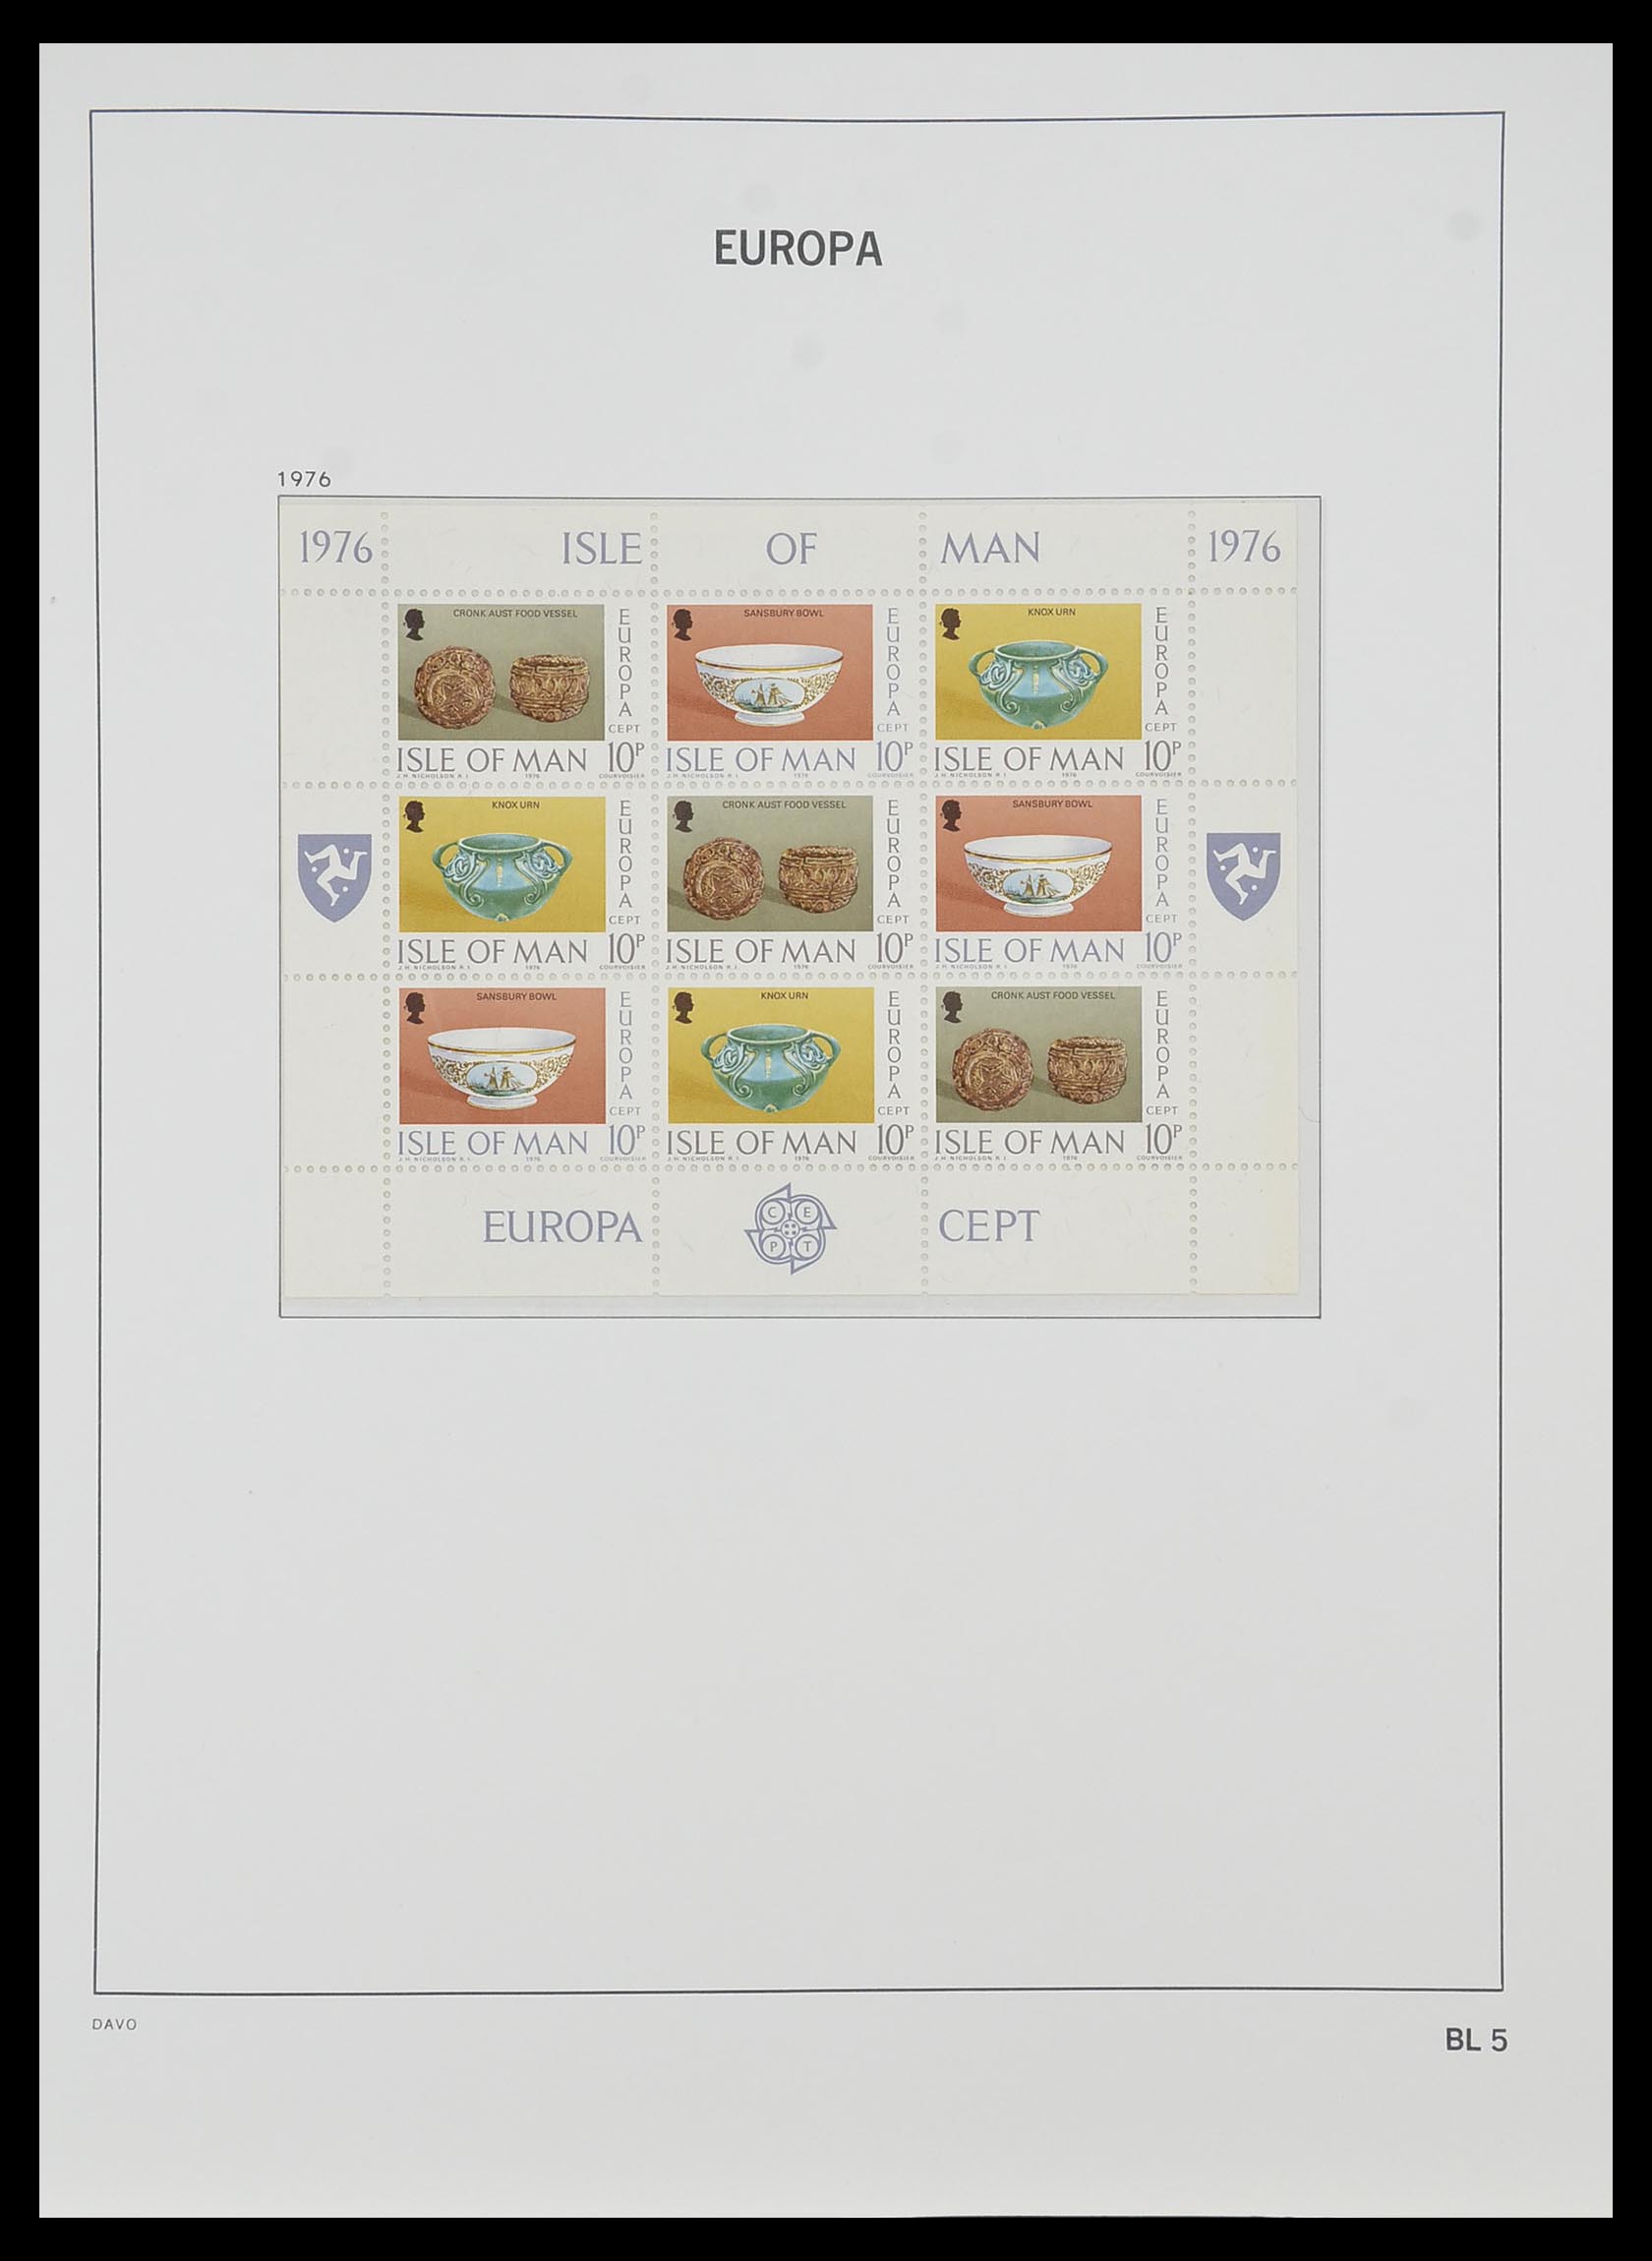 33985 005 - Stamp collection 33985 Europa CEPT souvenir sheets 1974-2014.